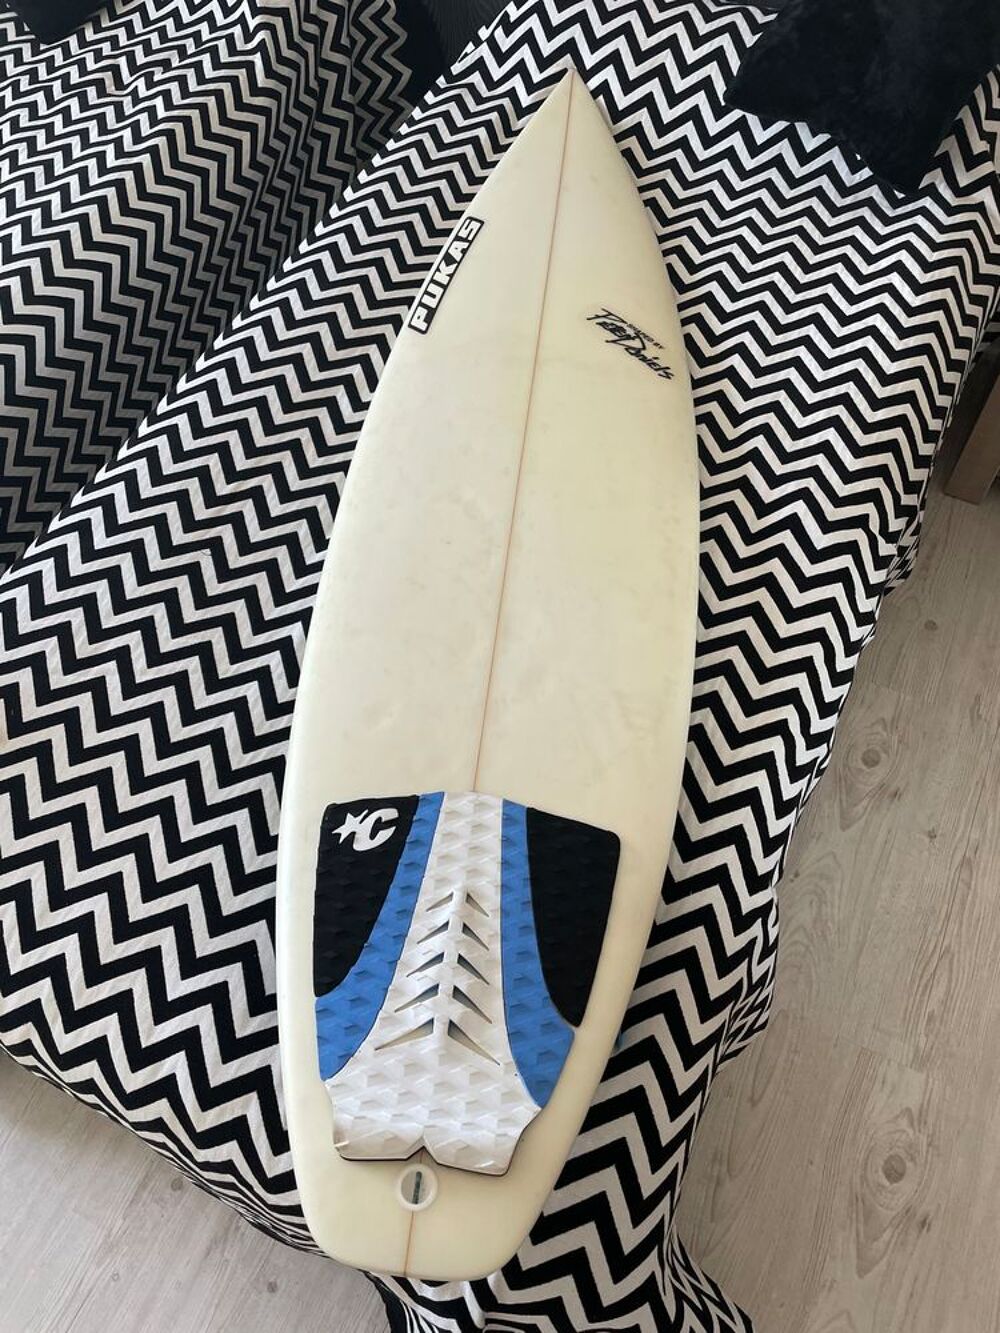 Planche de surf 6.0 presque neuf Sports